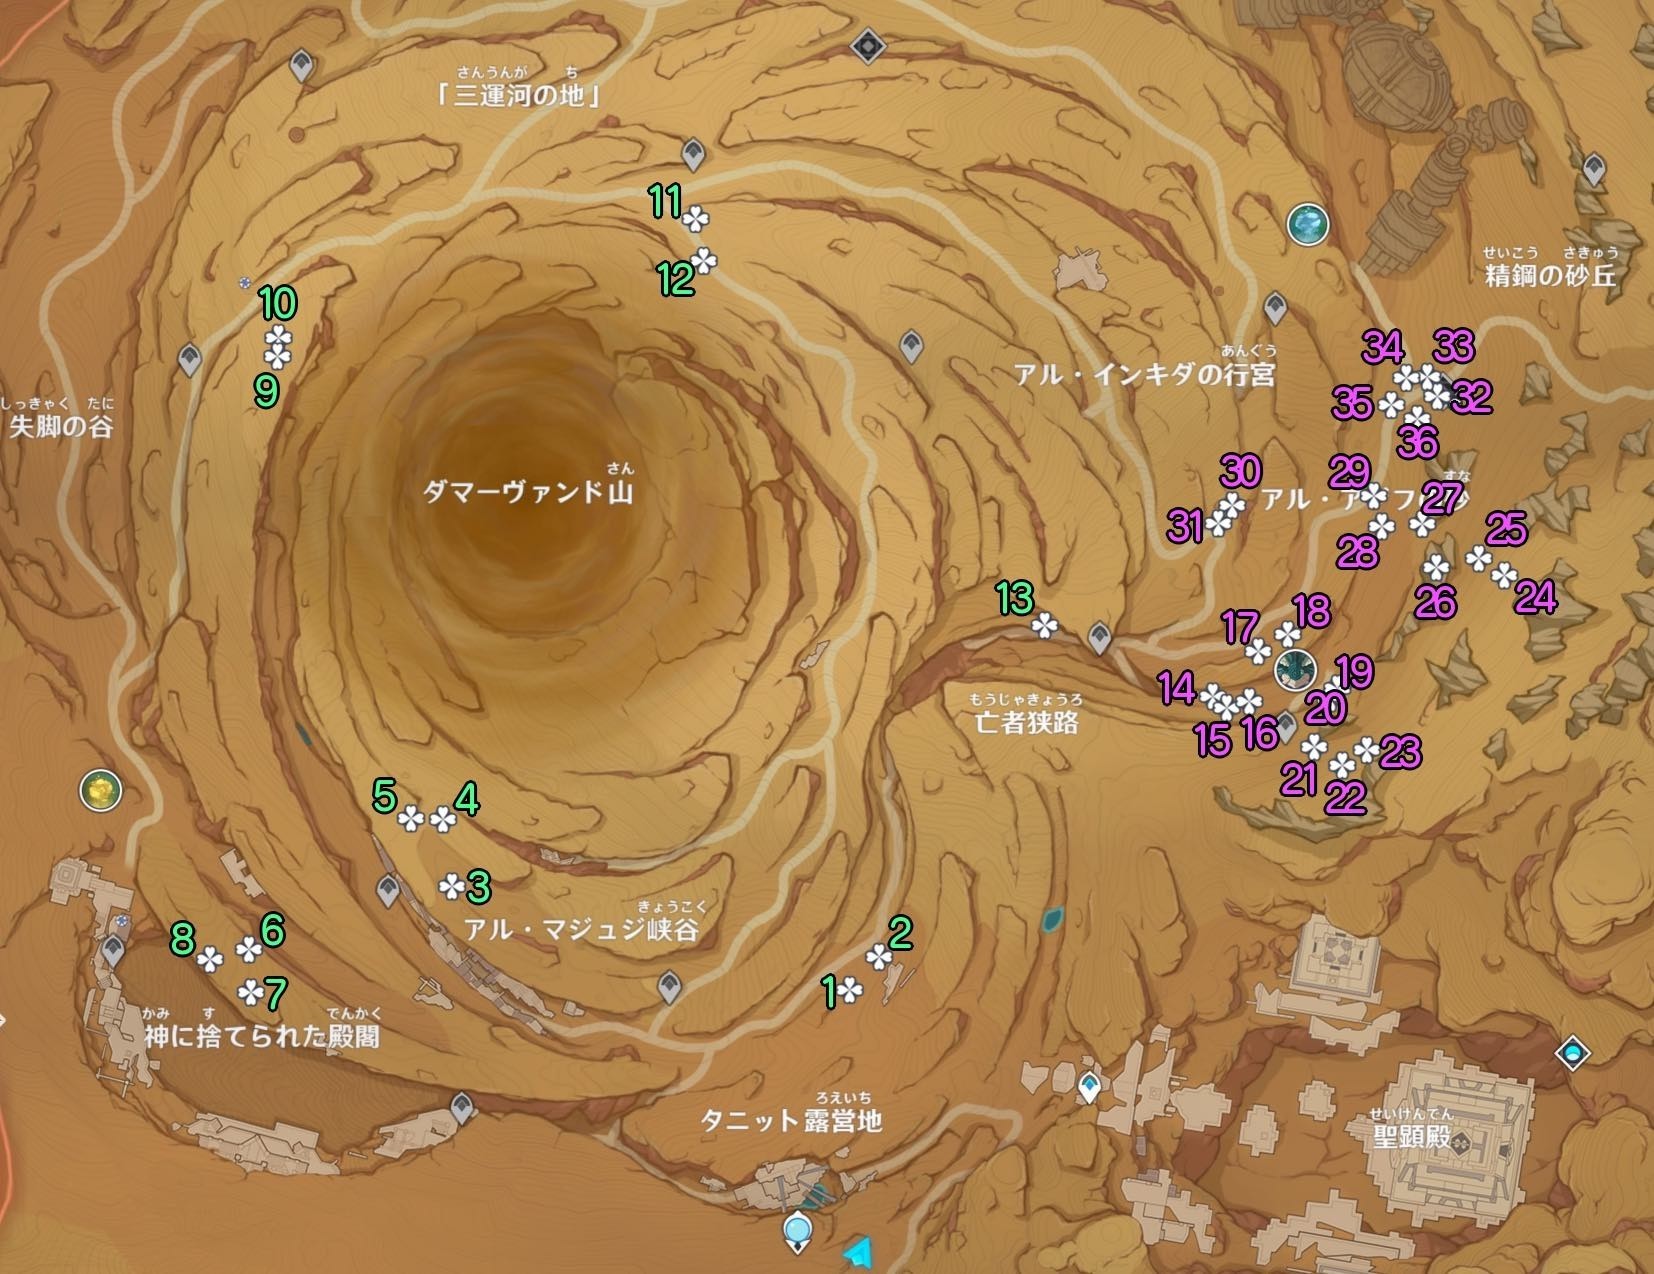 《原神》3.4沙脂蛹收集地图点位及分布 沙脂蛹怎么获得_地下区域 - 第1张